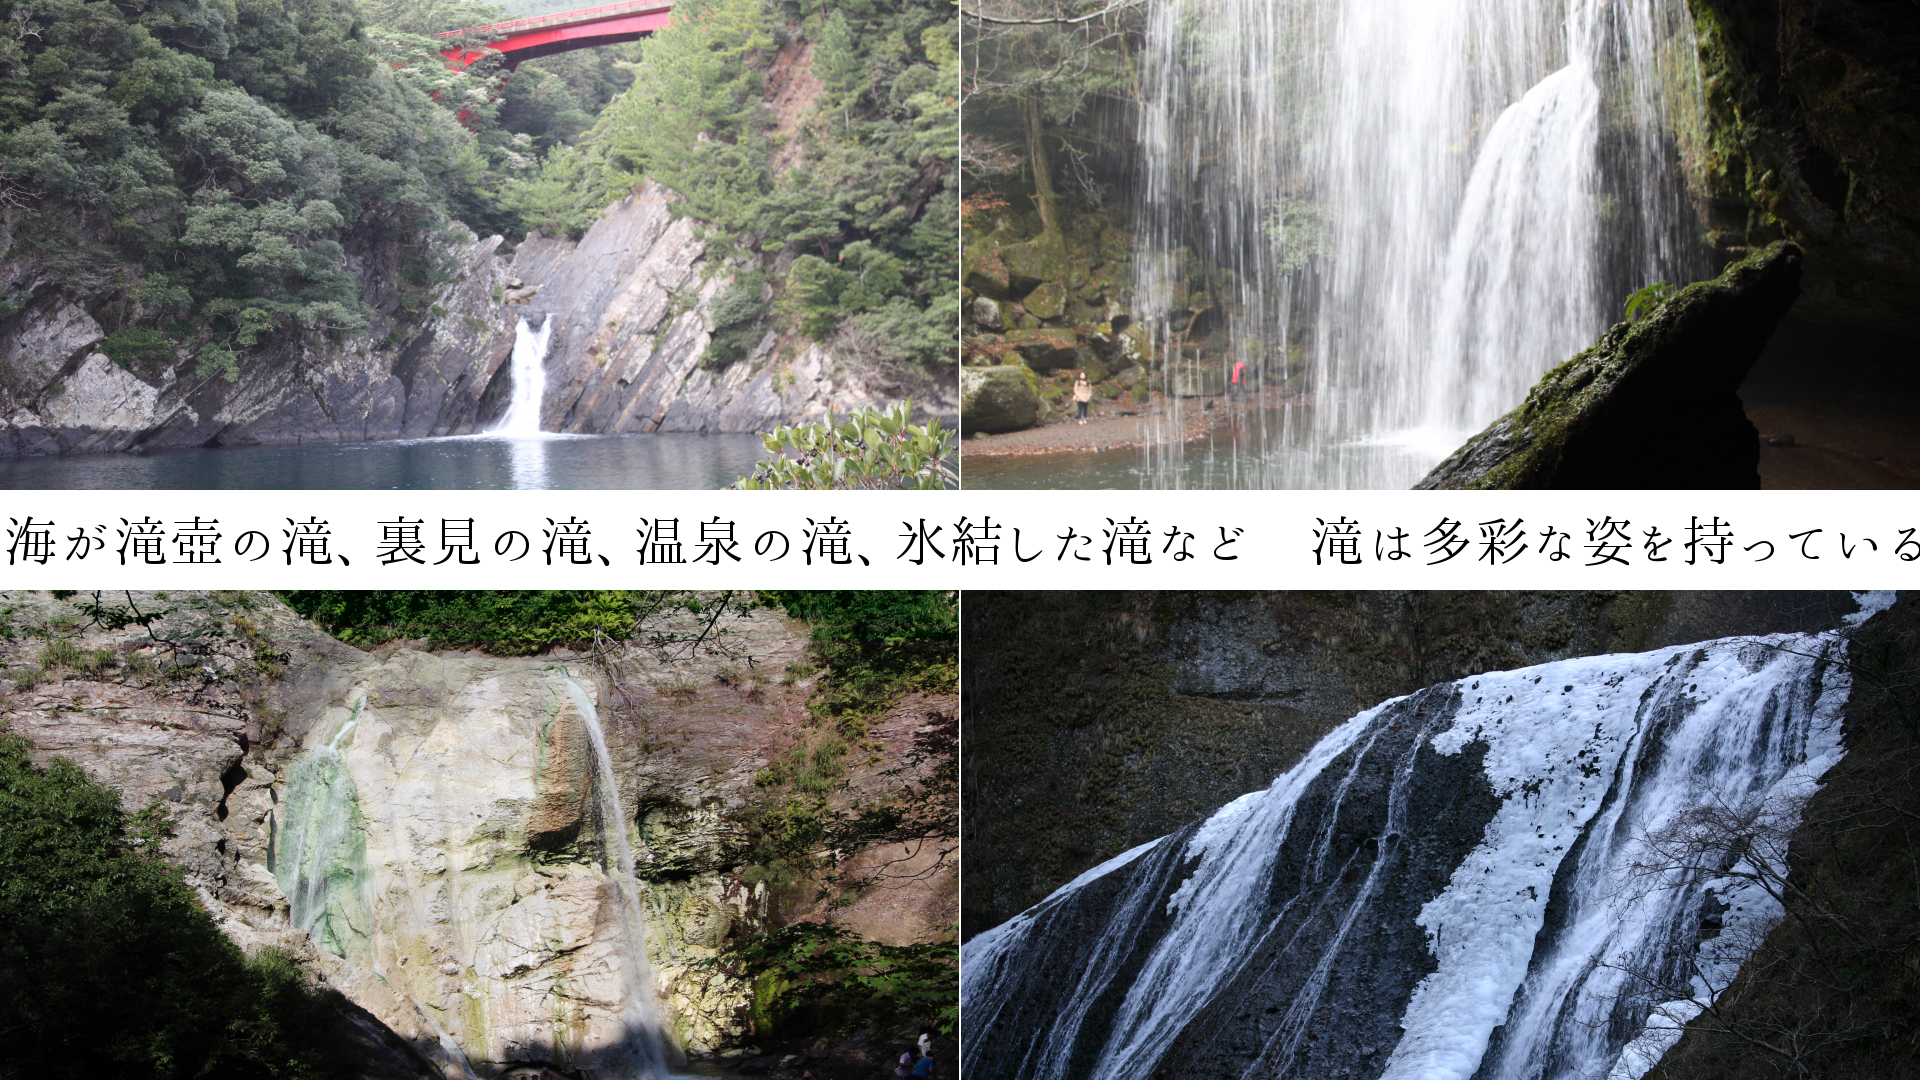 海が滝壺の滝、裏見の滝、温泉の滝、氷結した滝　滝は多彩です